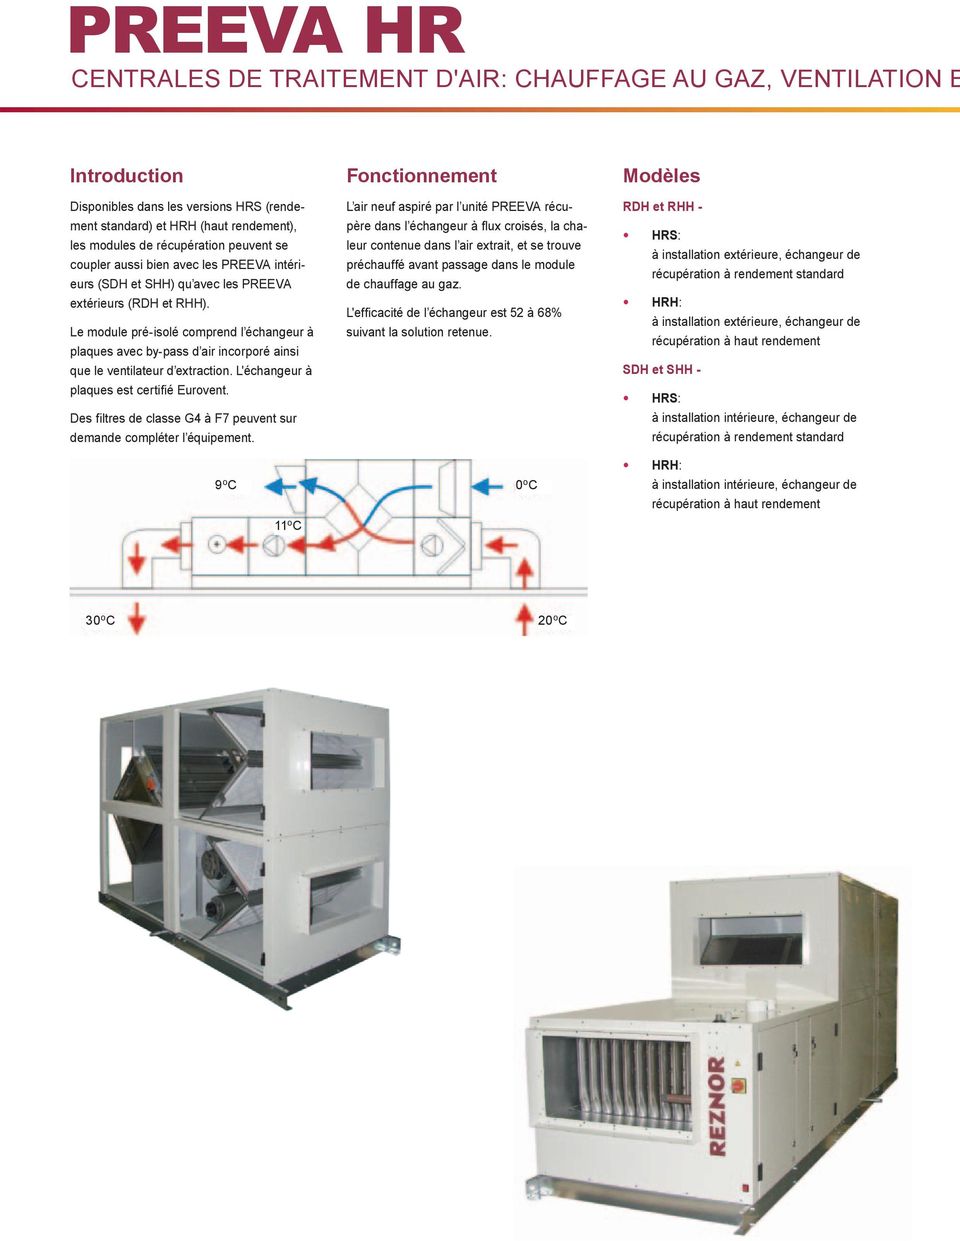 e module pré-isolé comprend l échangeur à plaques avec by-pass d air incorporé ainsi que le ventilateur d extraction. 'échangeur à plaques est certifié Eurovent.